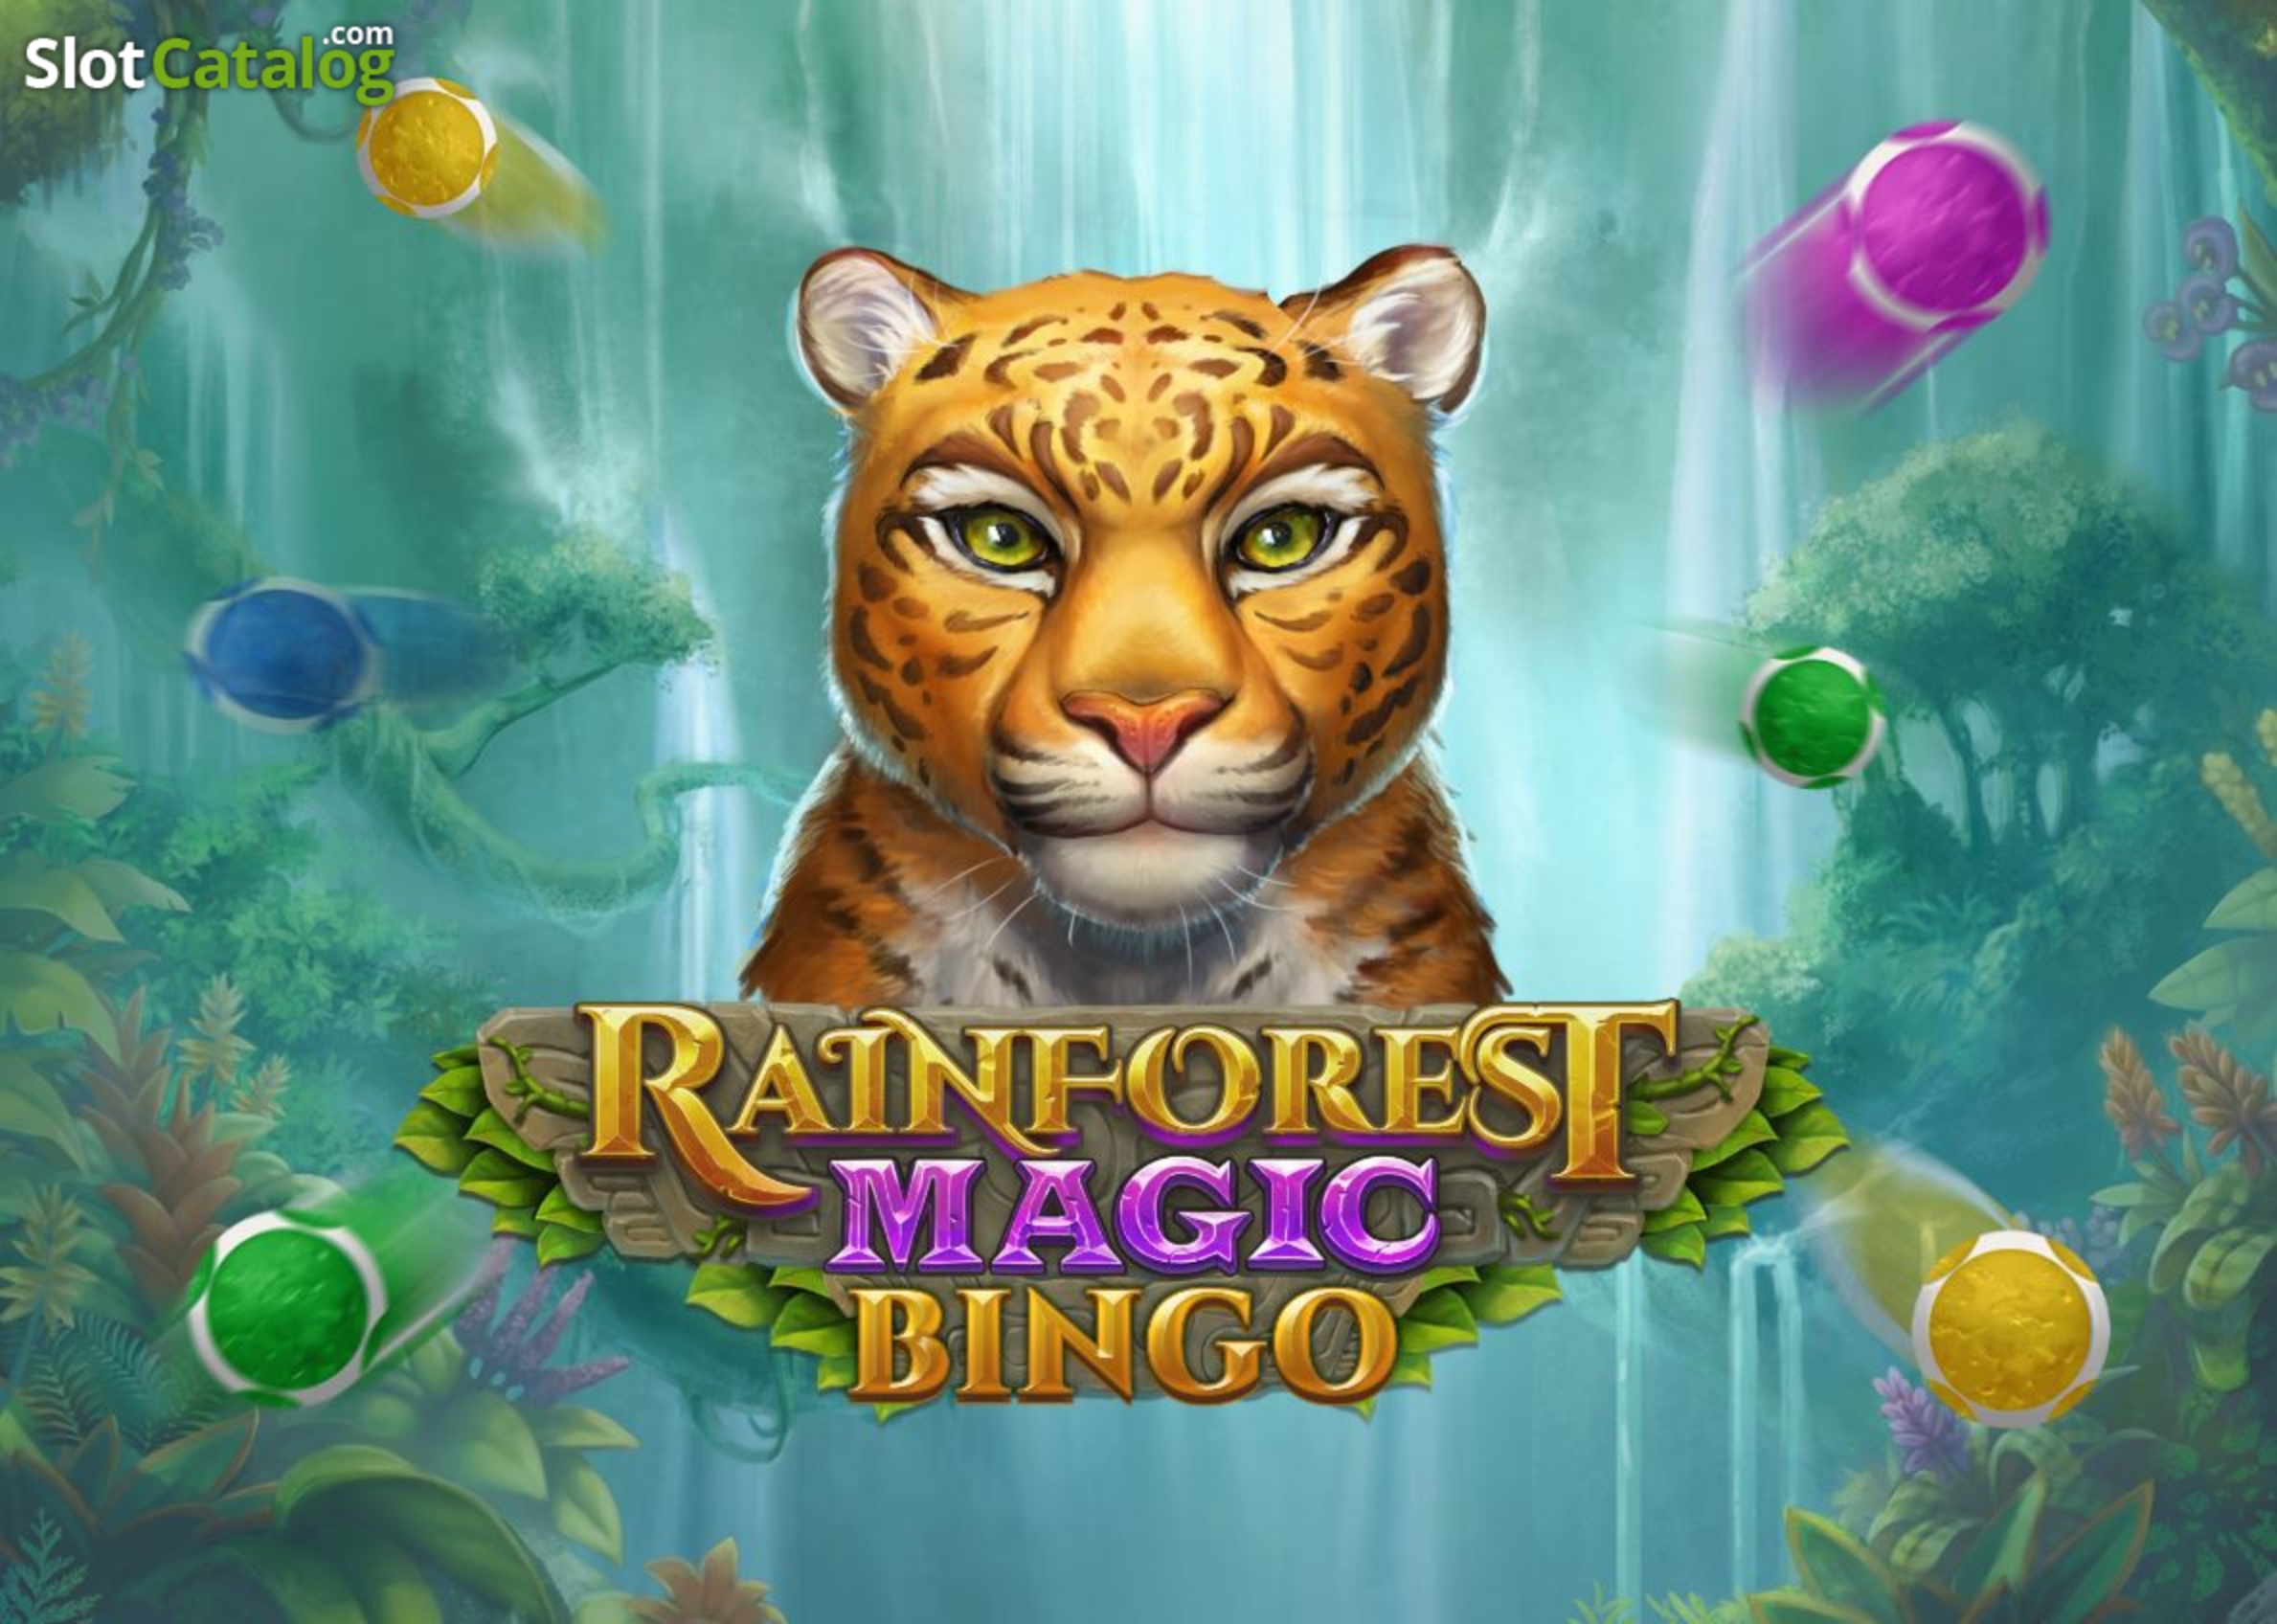 Rainforest Magic Bingo demo